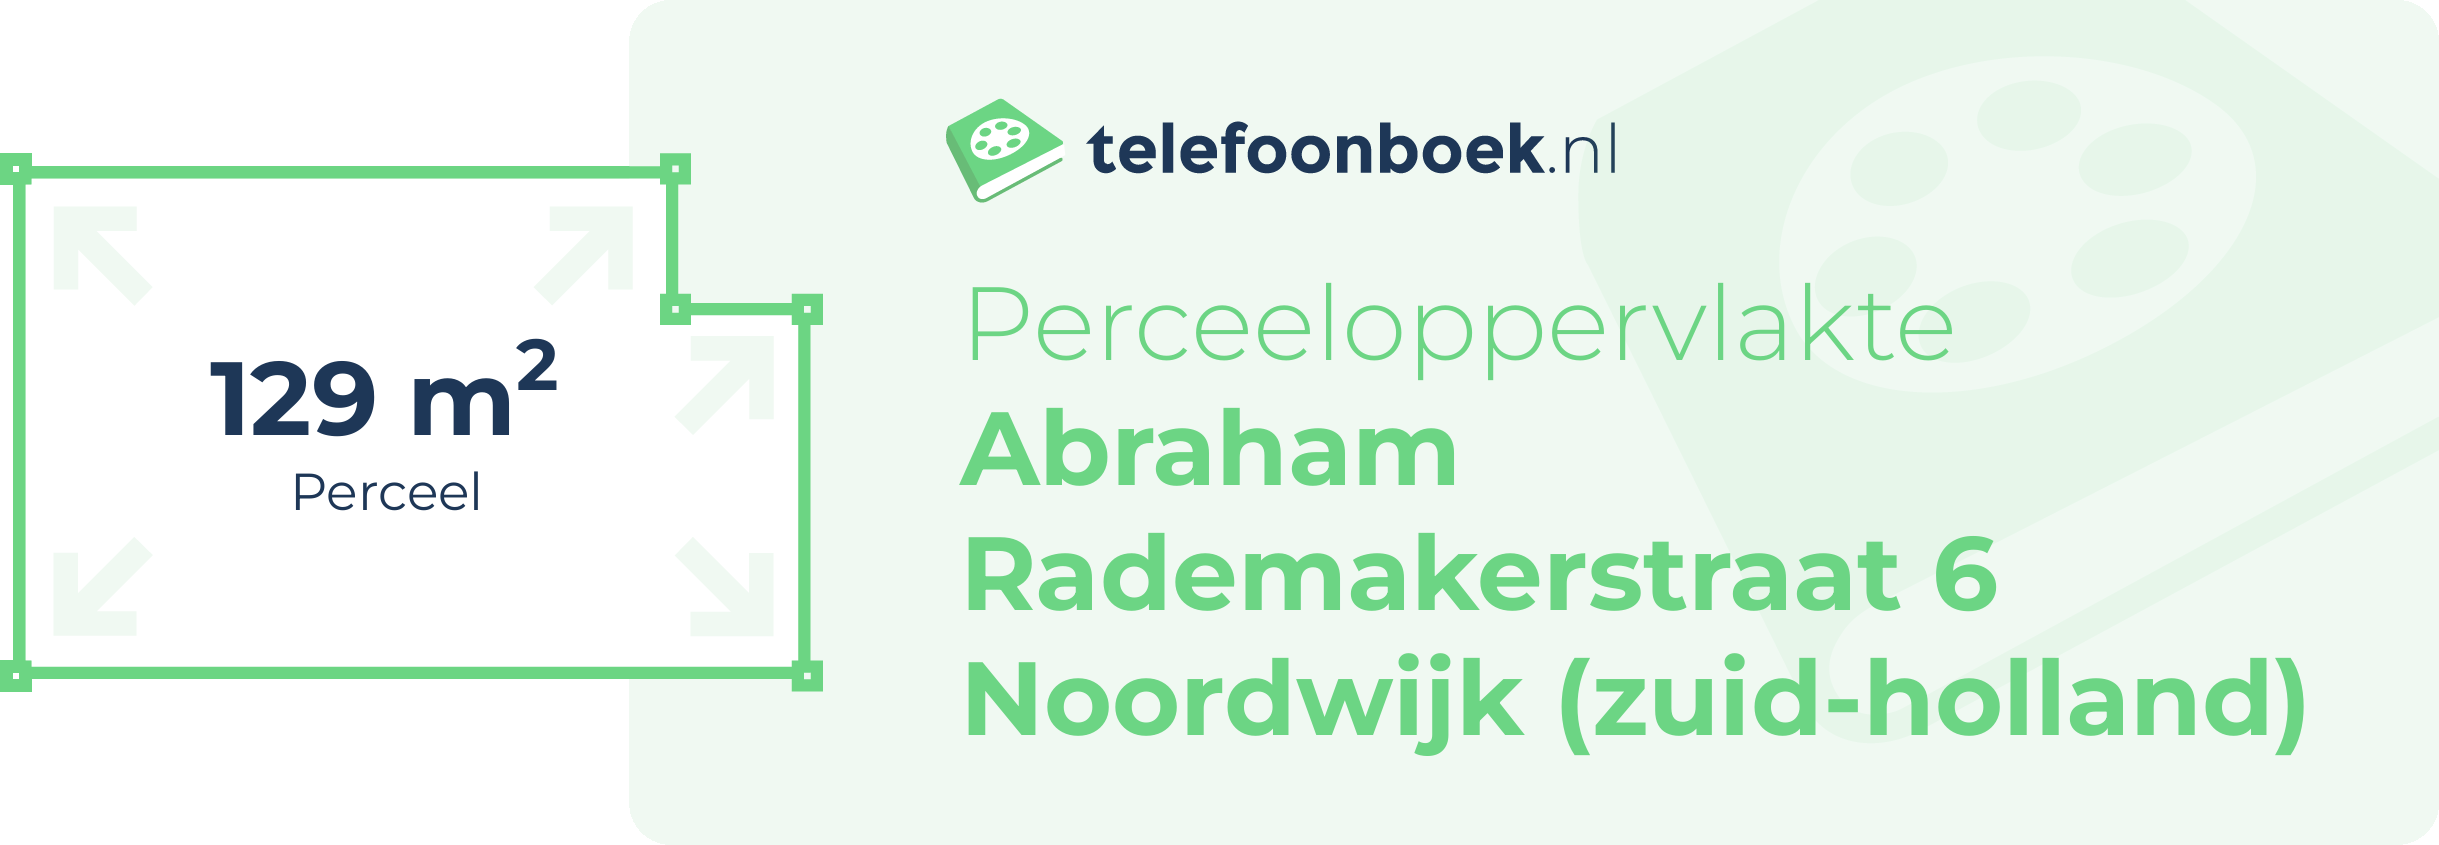 Perceeloppervlakte Abraham Rademakerstraat 6 Noordwijk (Zuid-Holland)